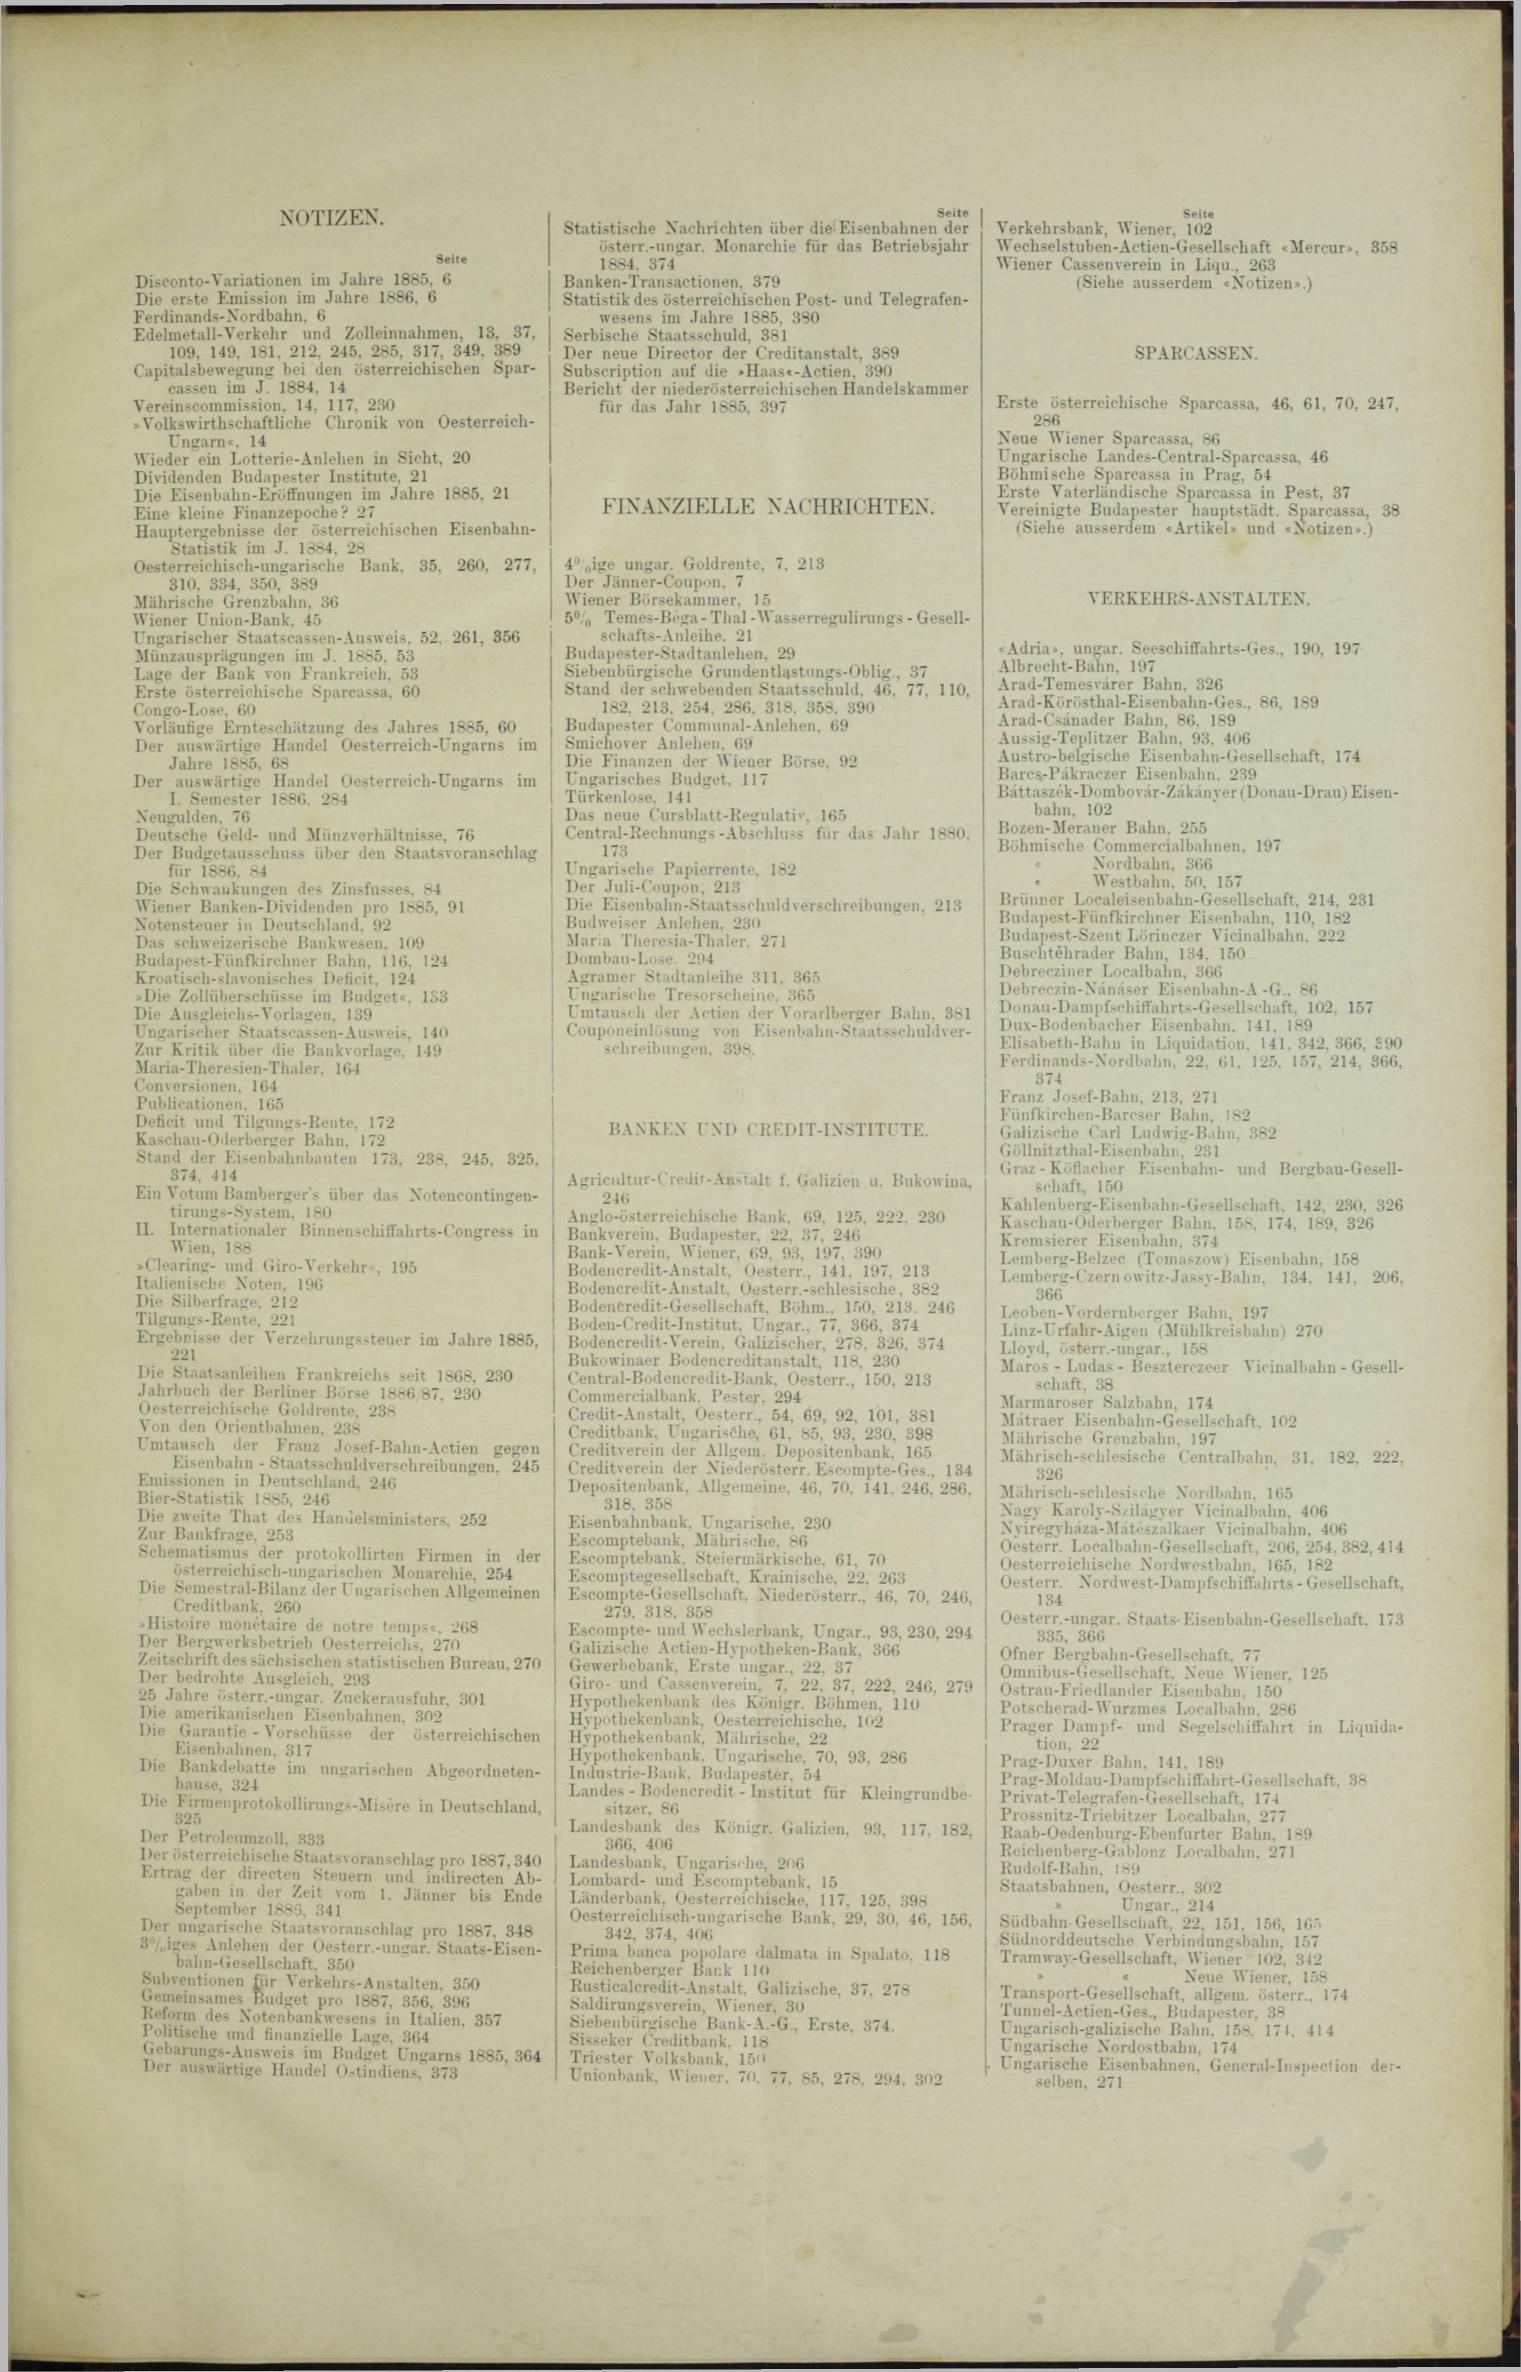 Der Tresor 29.07.1886 - Seite 11